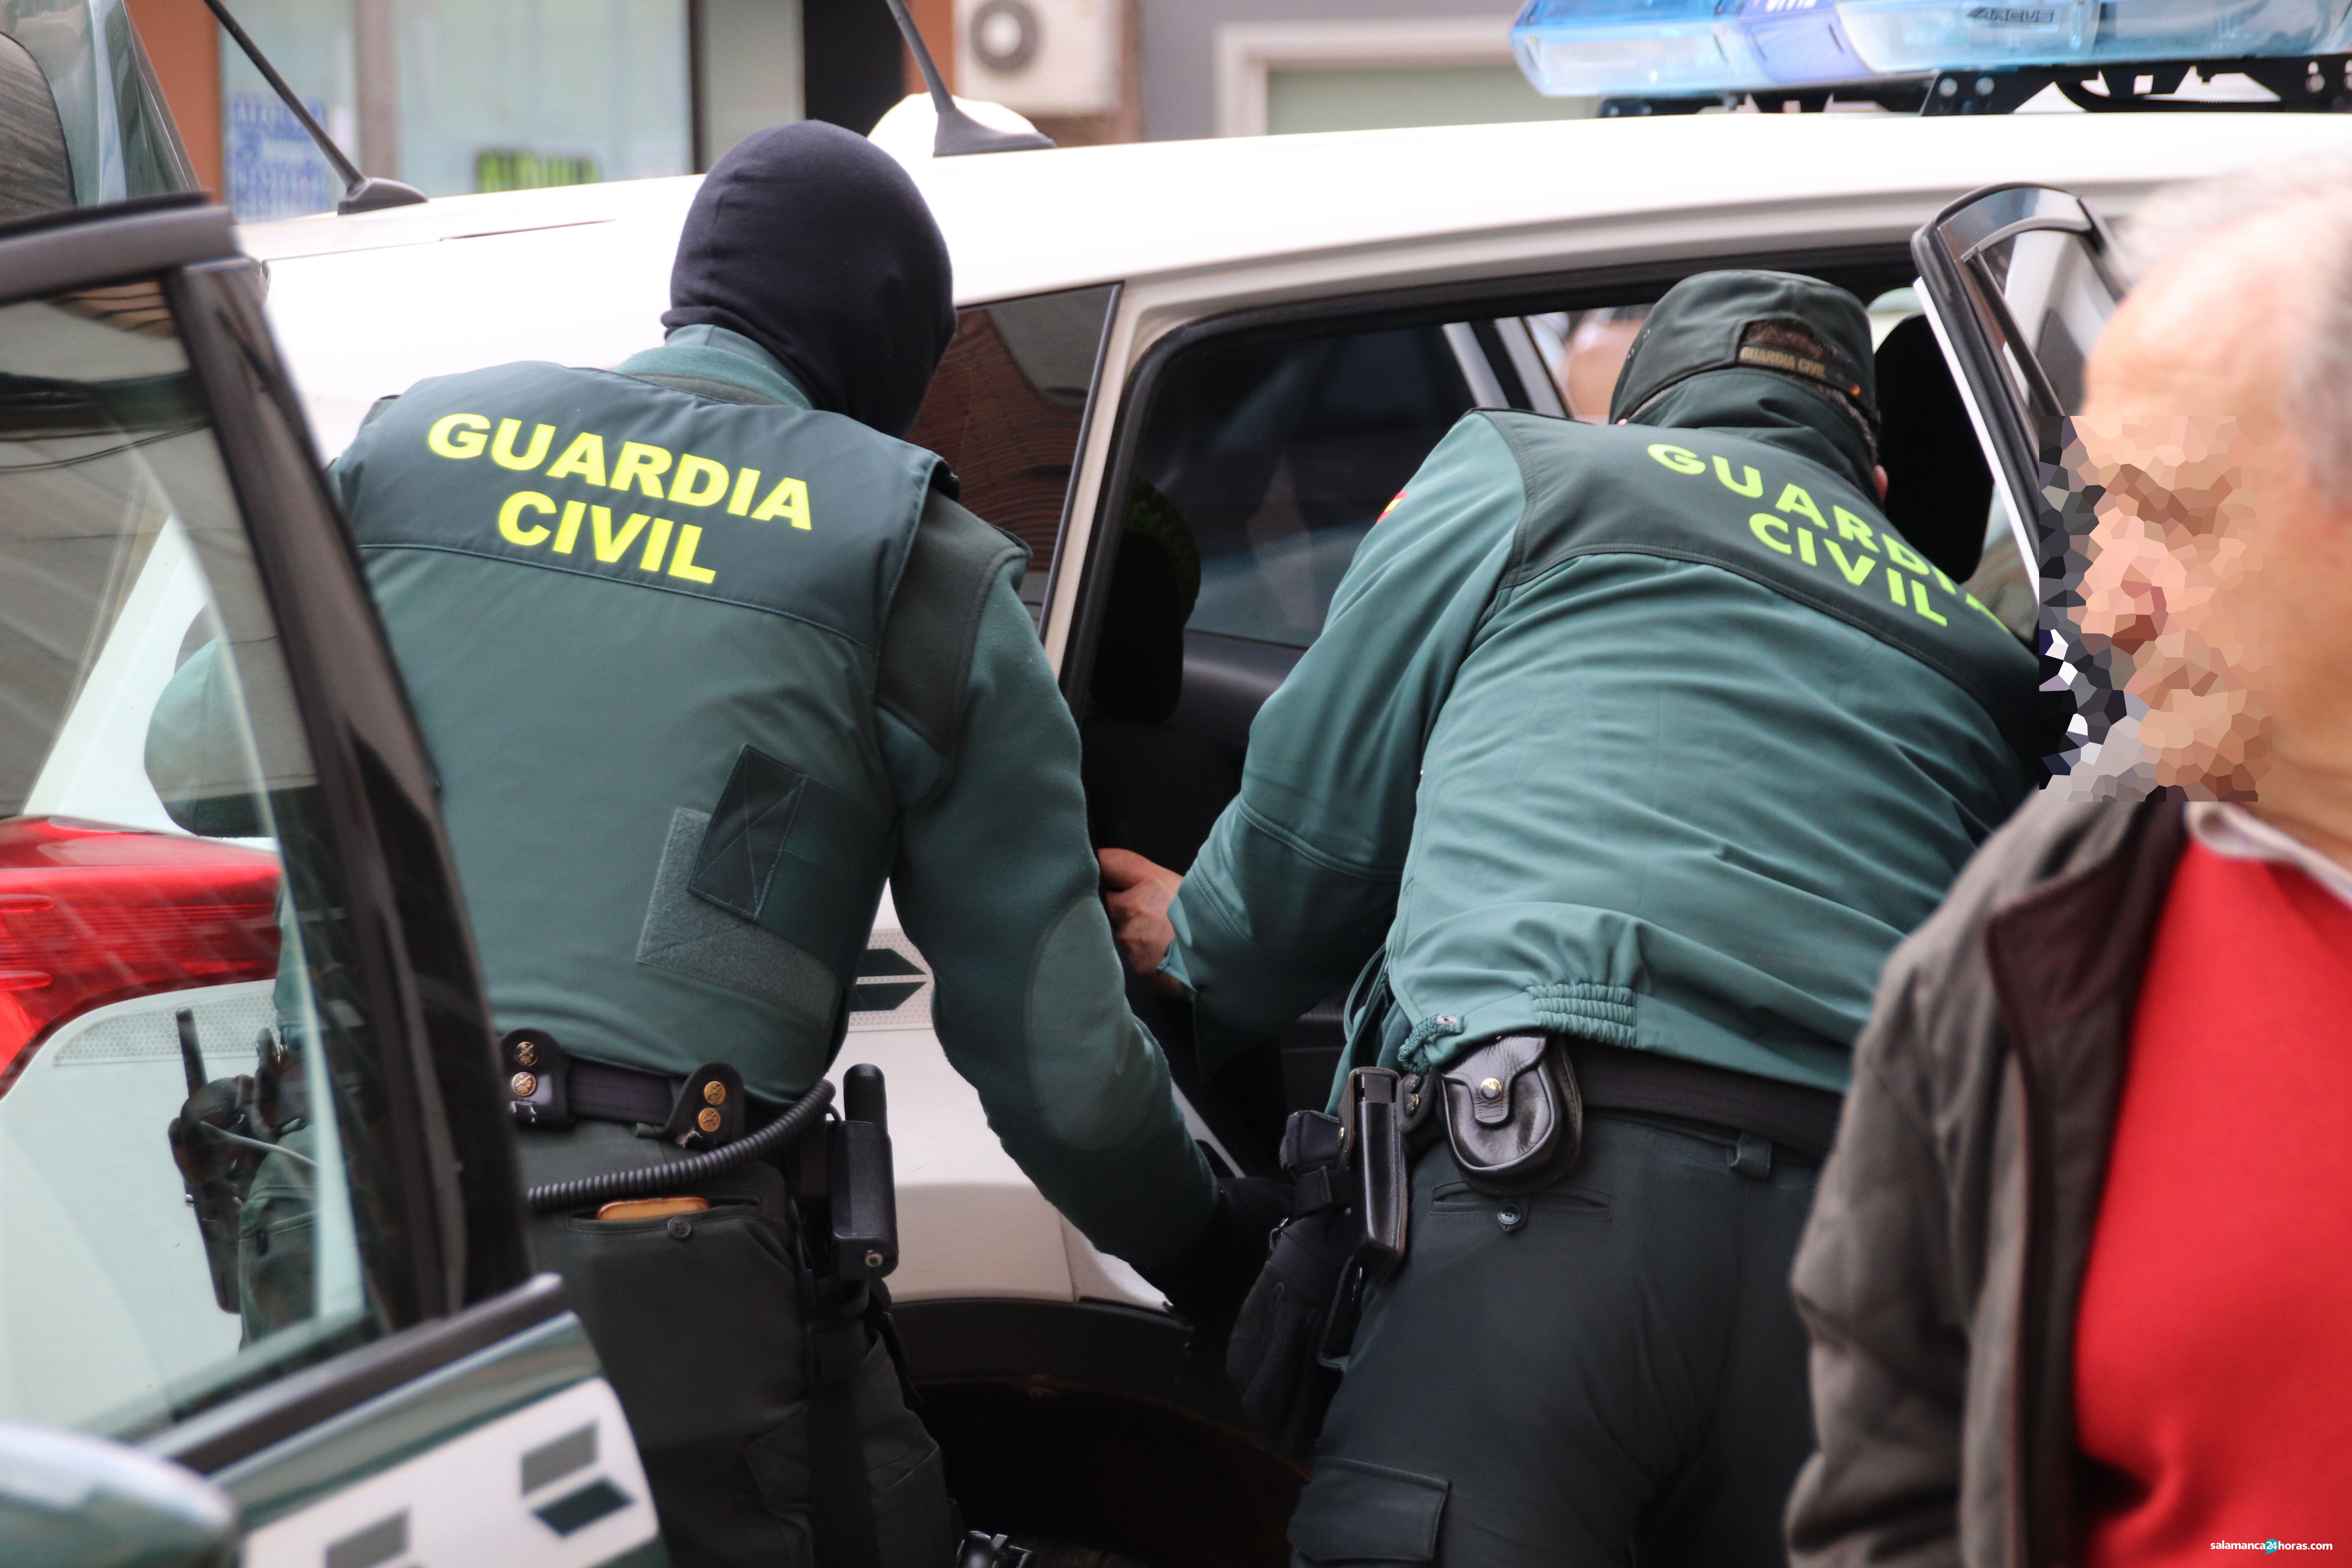  Guardia Civil Redada en el Greco (21) 